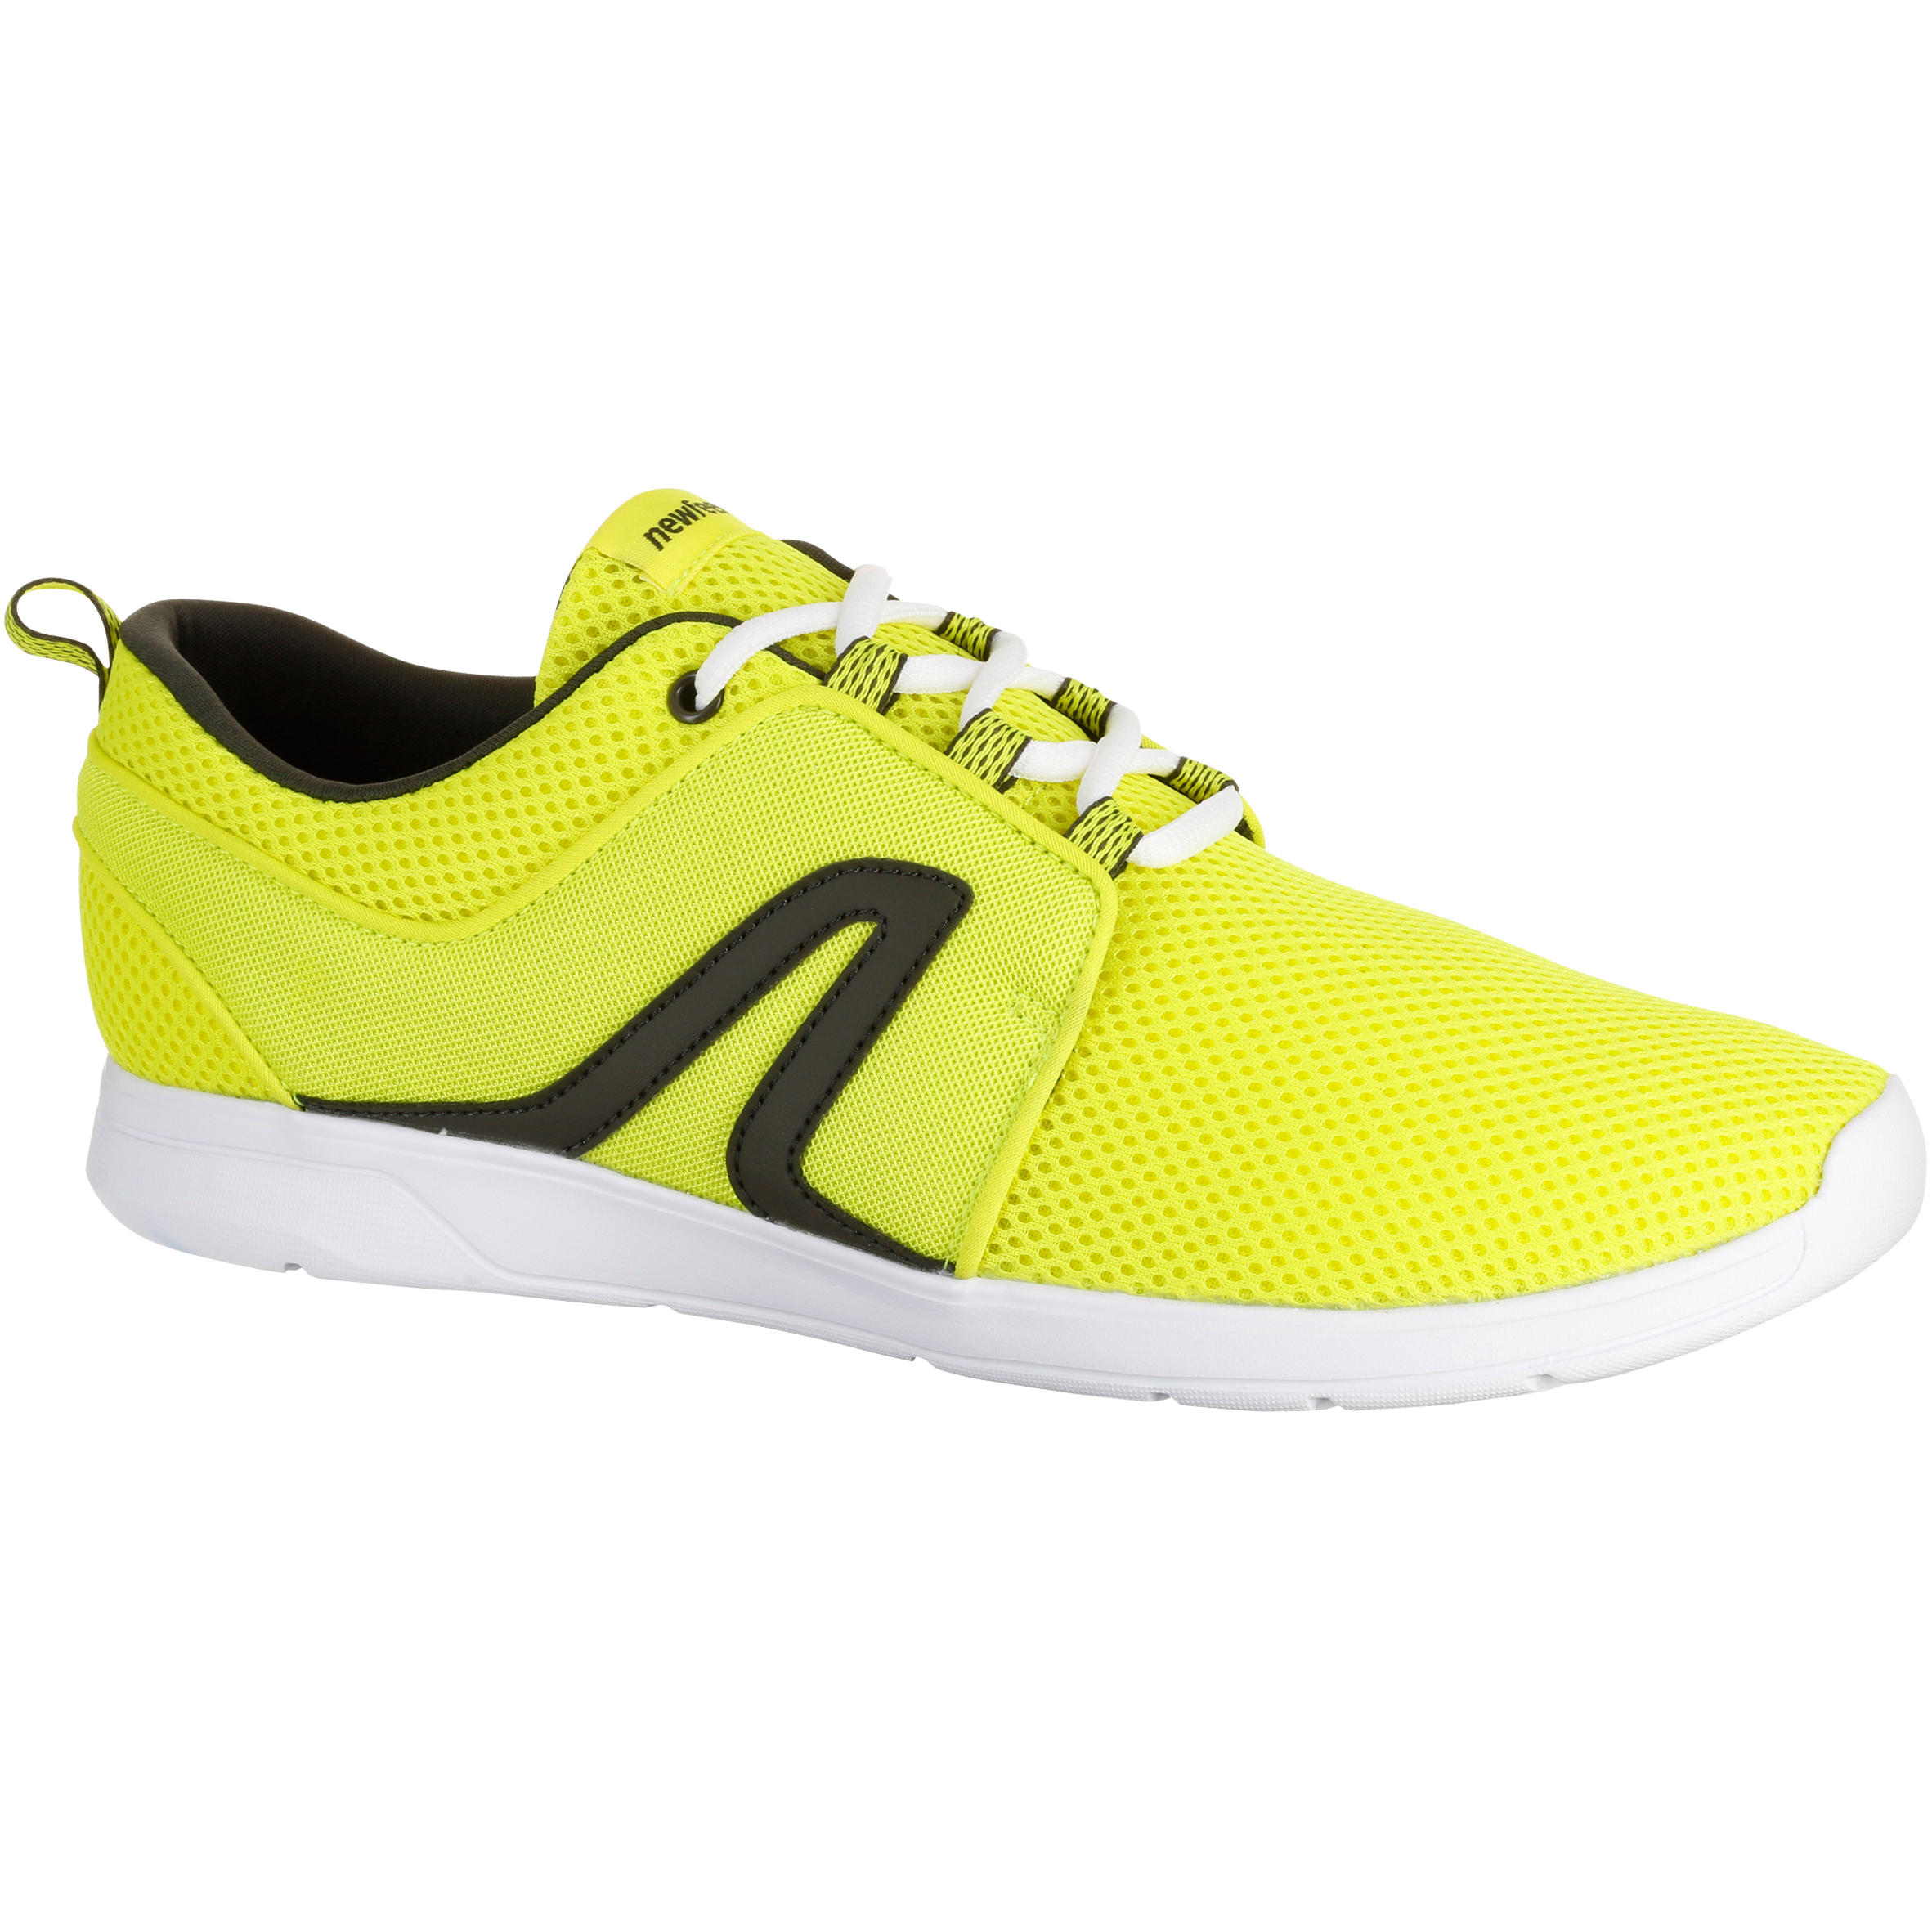 NEWFEEL Soft 140 Mesh Men's Fitness Walking Shoes - Neon Yellow